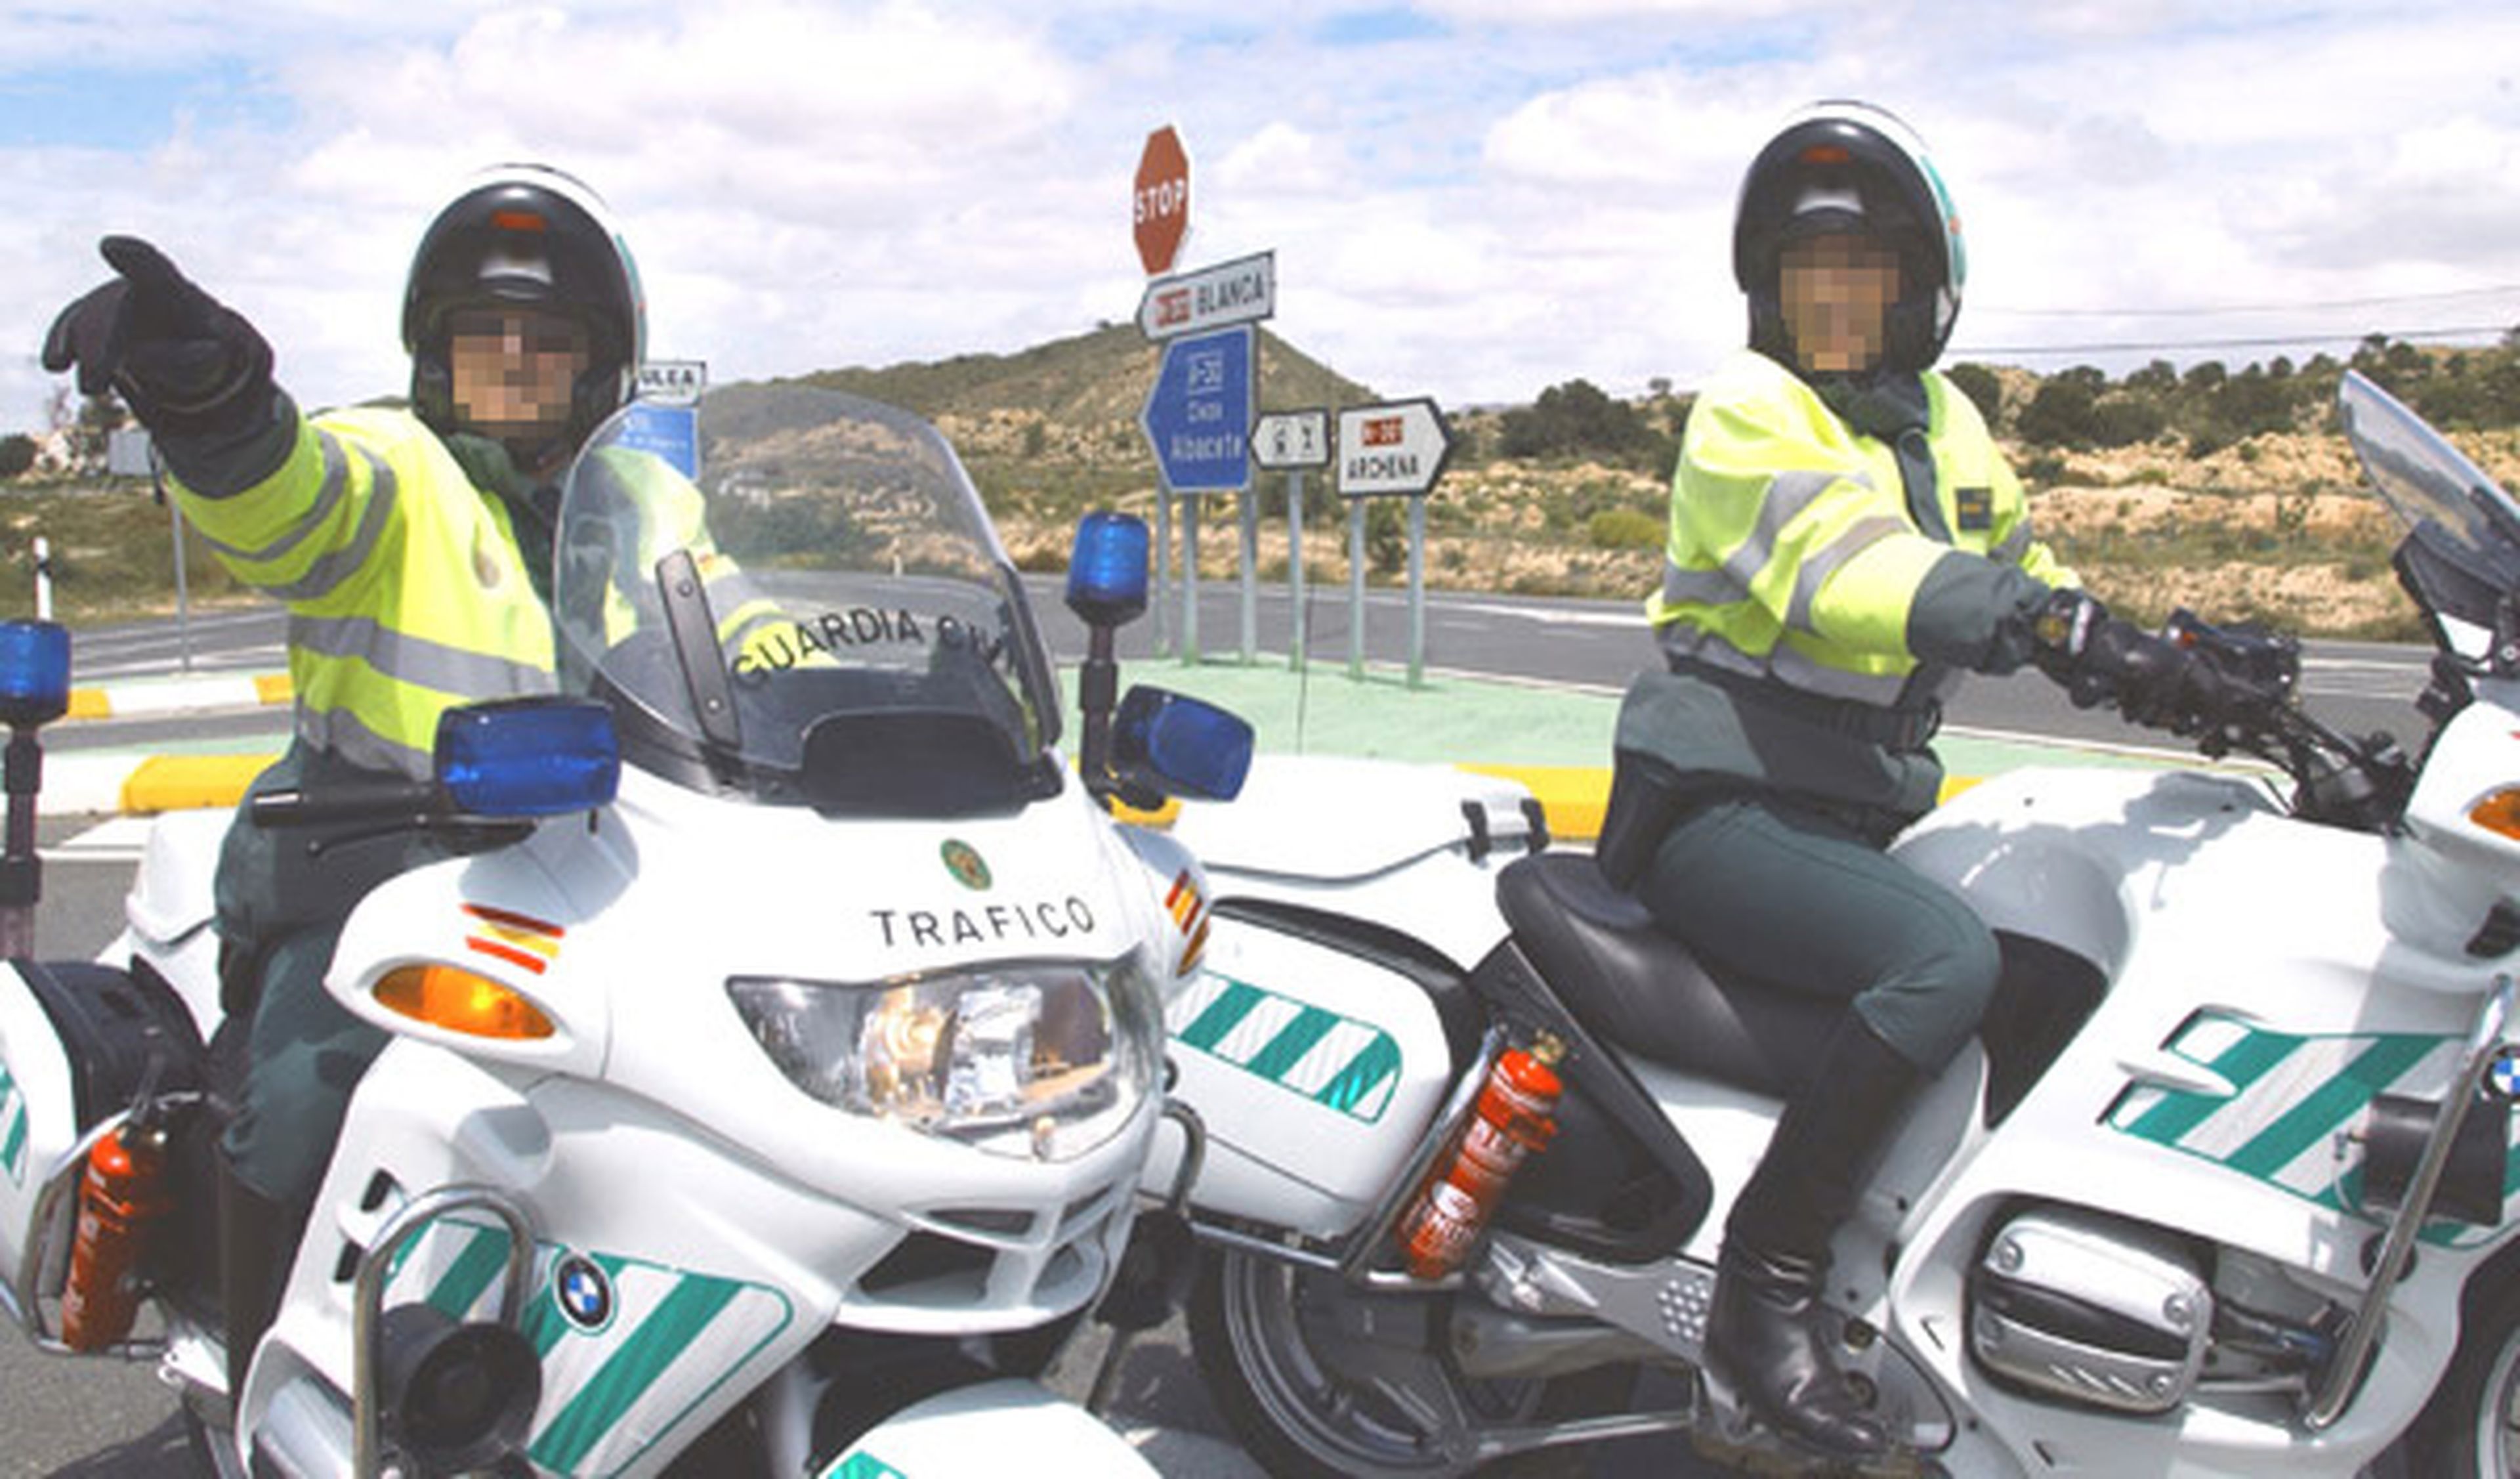 Arrolla a un agente con su moto en la Verja de Gibraltar